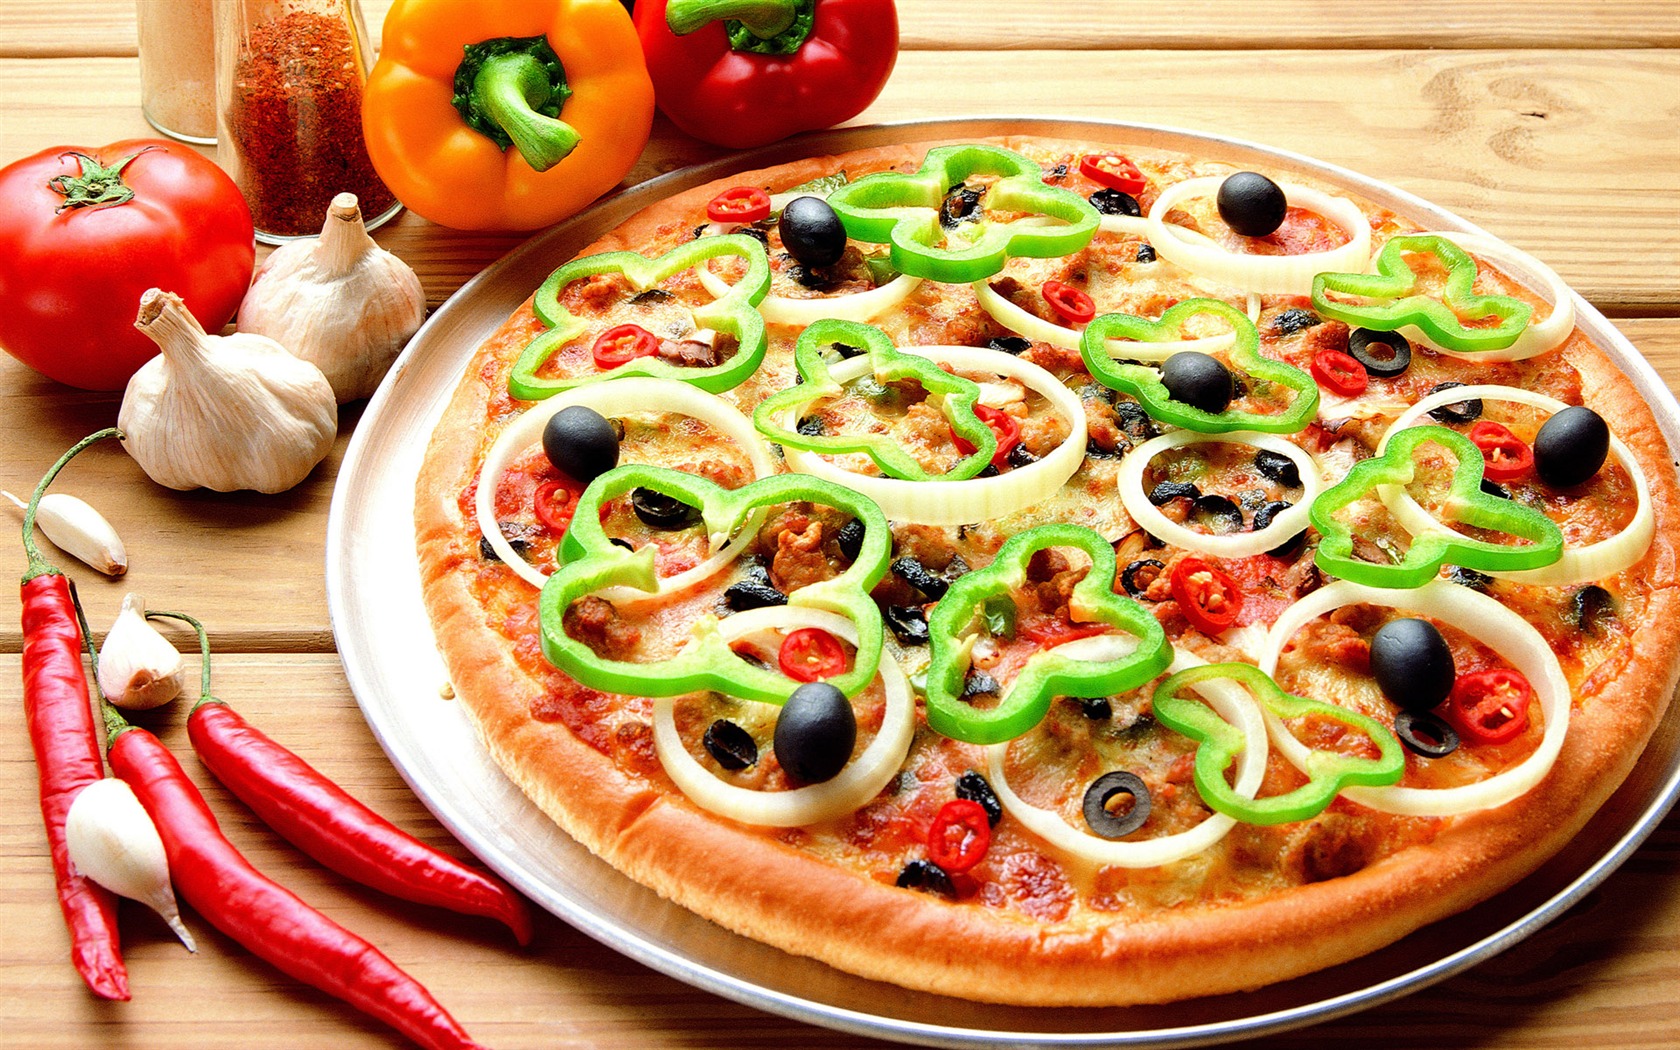 Fondos de pizzerías de Alimentos (3) #1 - 1680x1050